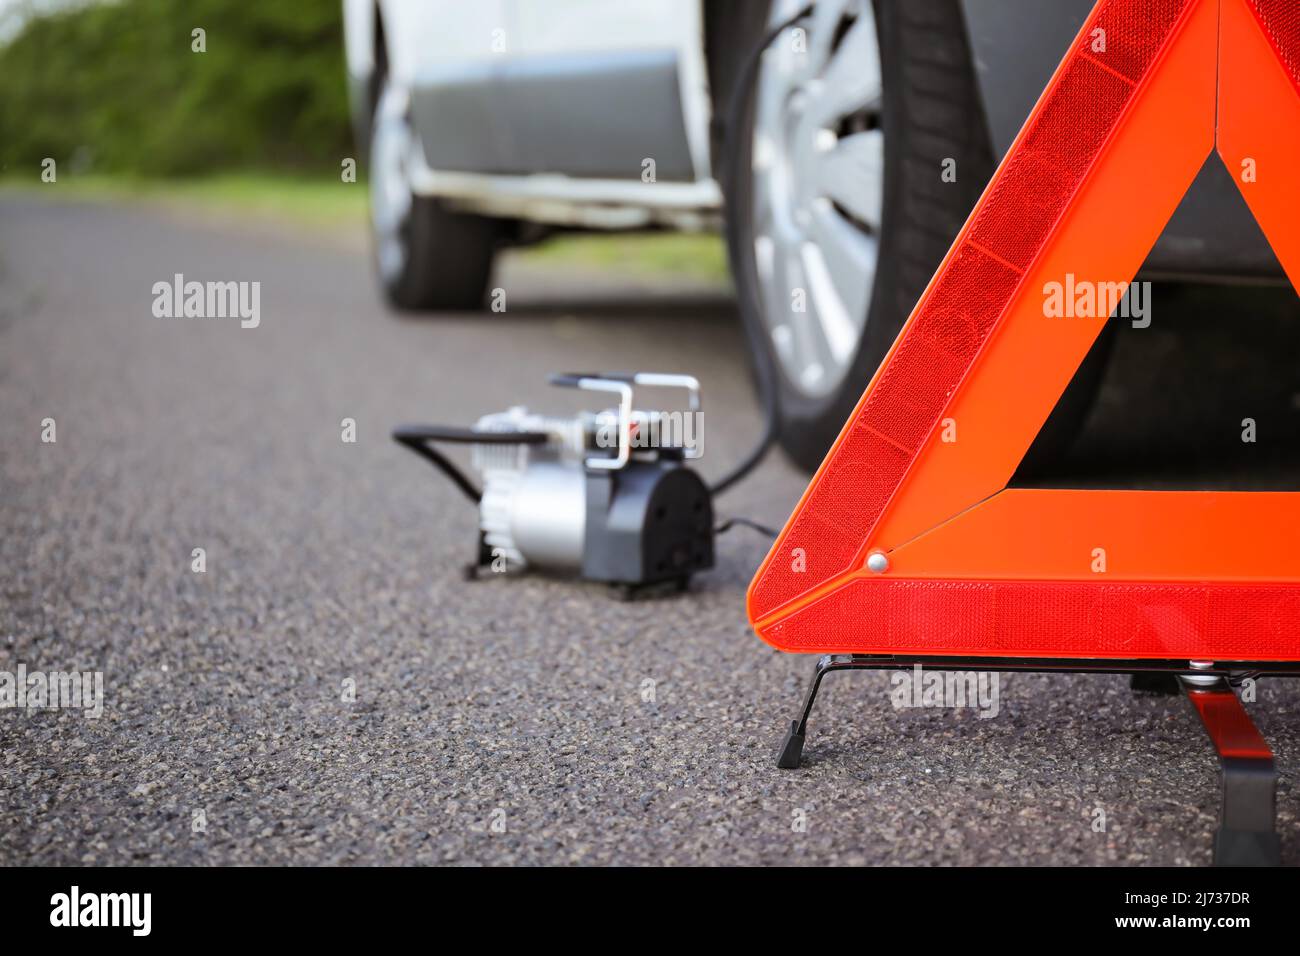 Warnwesten für Autofahrer und Kunststoff rote Not-Aus-Schild für Auto  Stockfotografie - Alamy